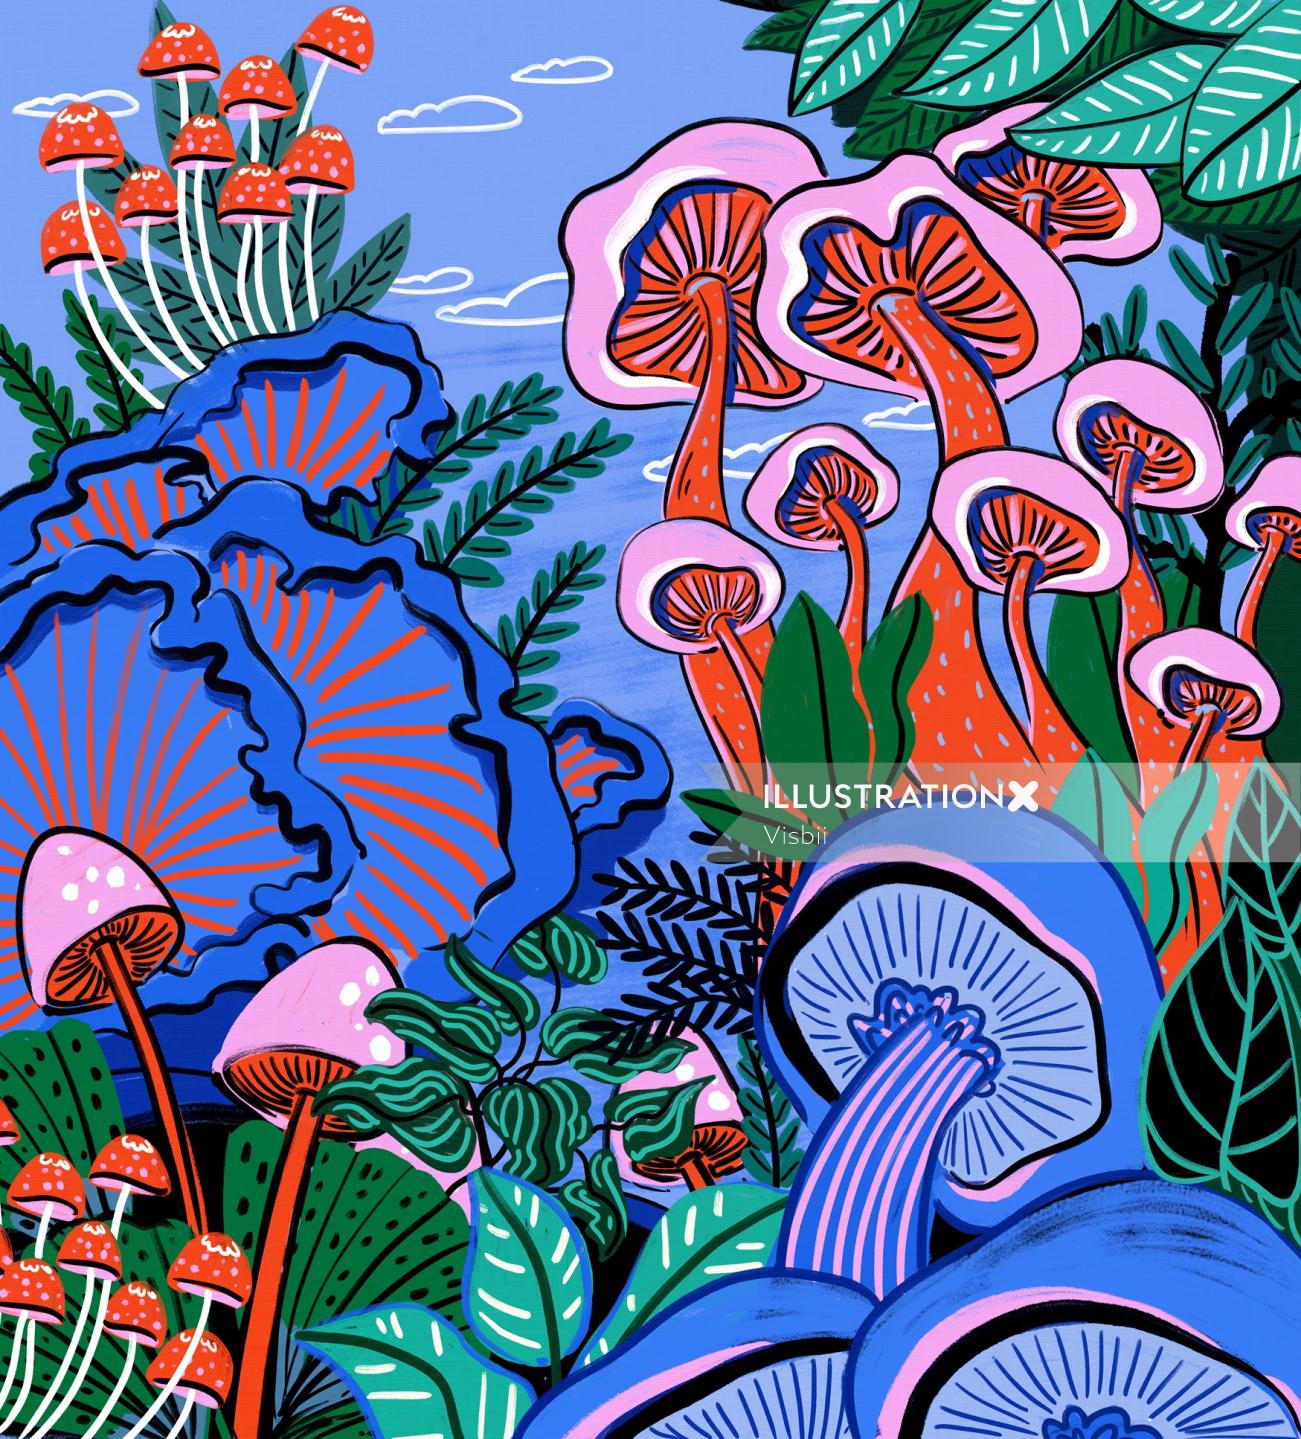 Mushroom plant nature illustration